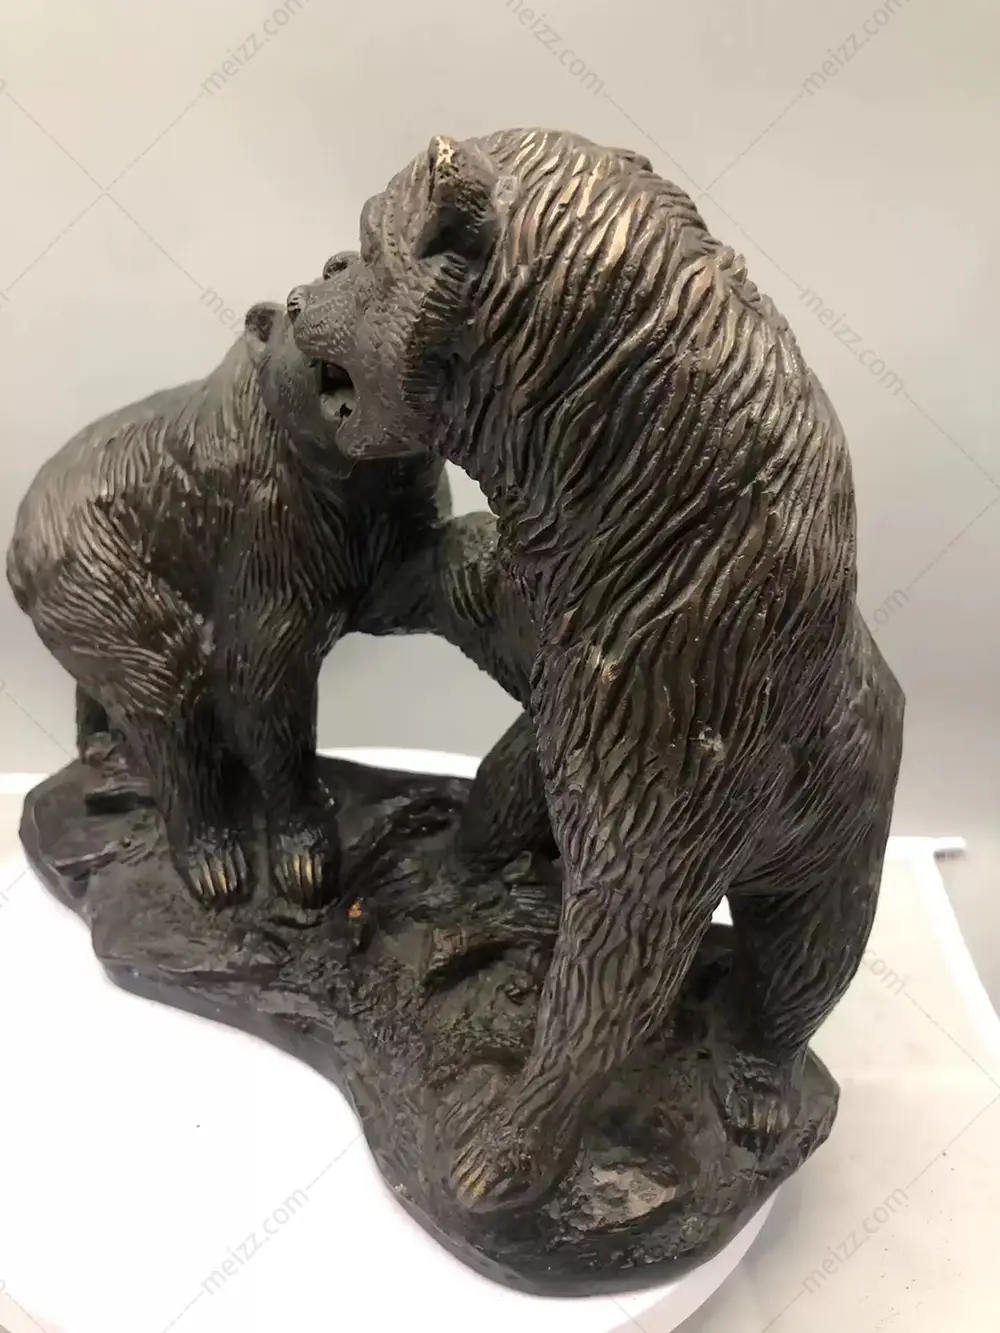 bear bronze statue